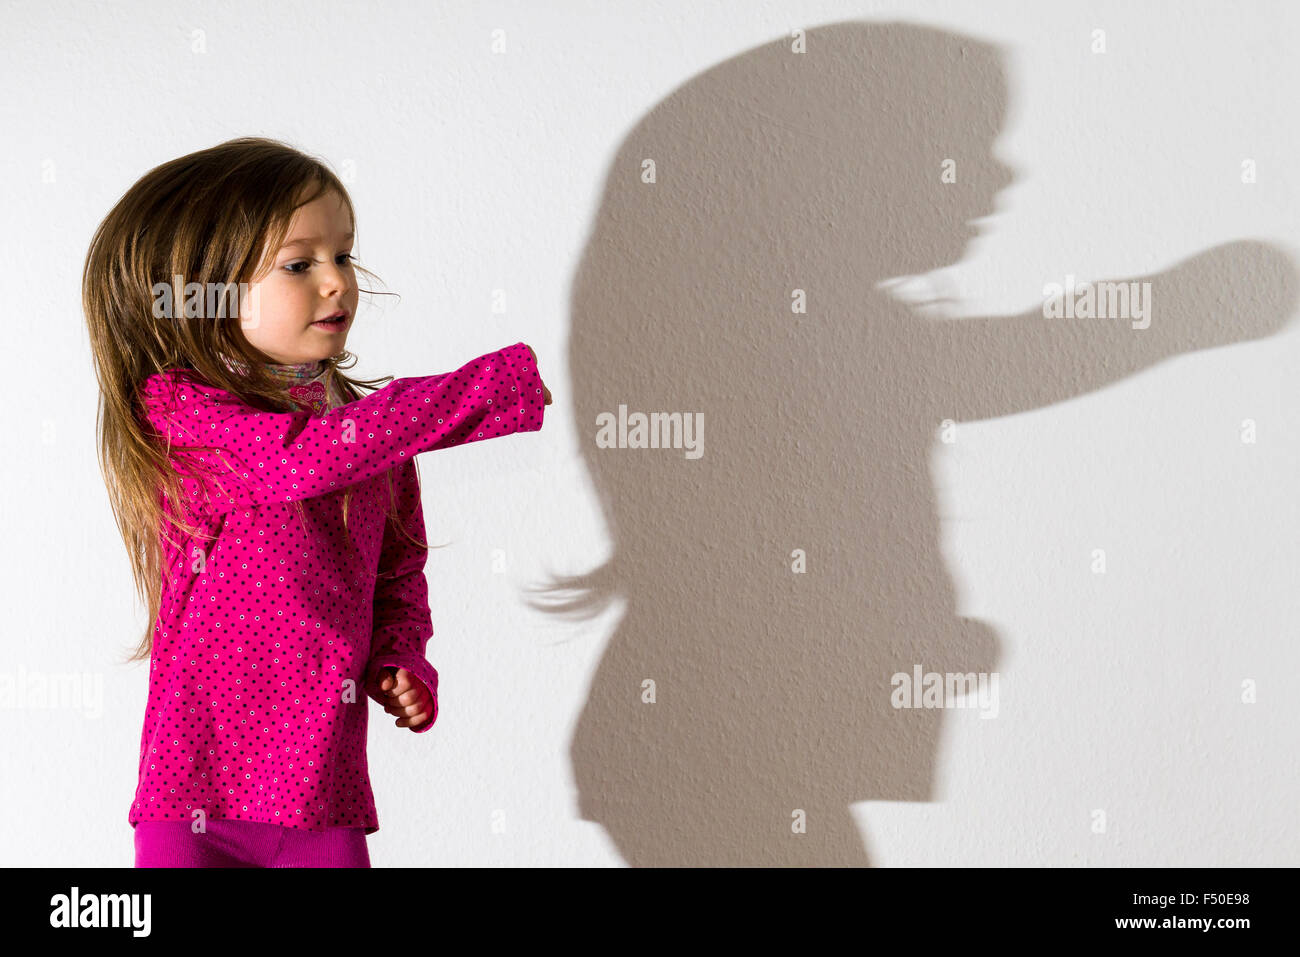 Eine blonde drei Jahre altes Mädchen, trägt ein rosafarbenes Hemd, tanzt mit offenem Haar vor einer weißen Wand, ihr Schatten hinter sich lassen Stockfoto